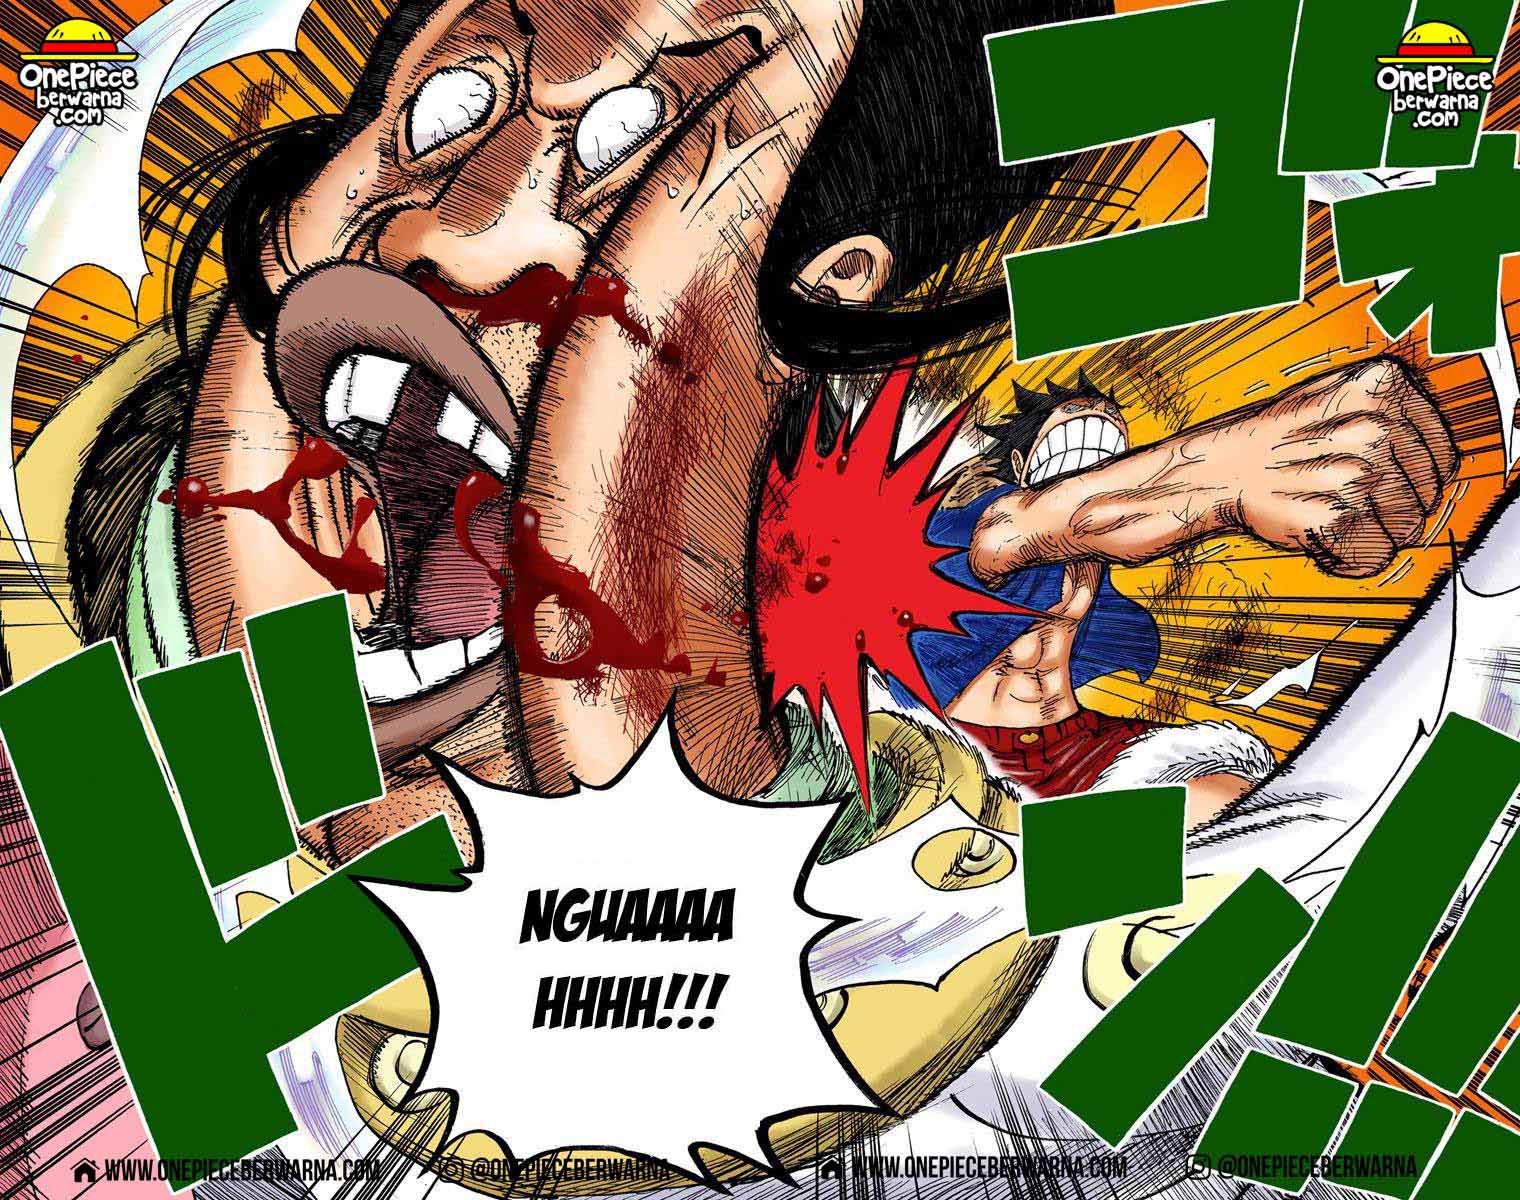 One Piece Berwarna Chapter 502